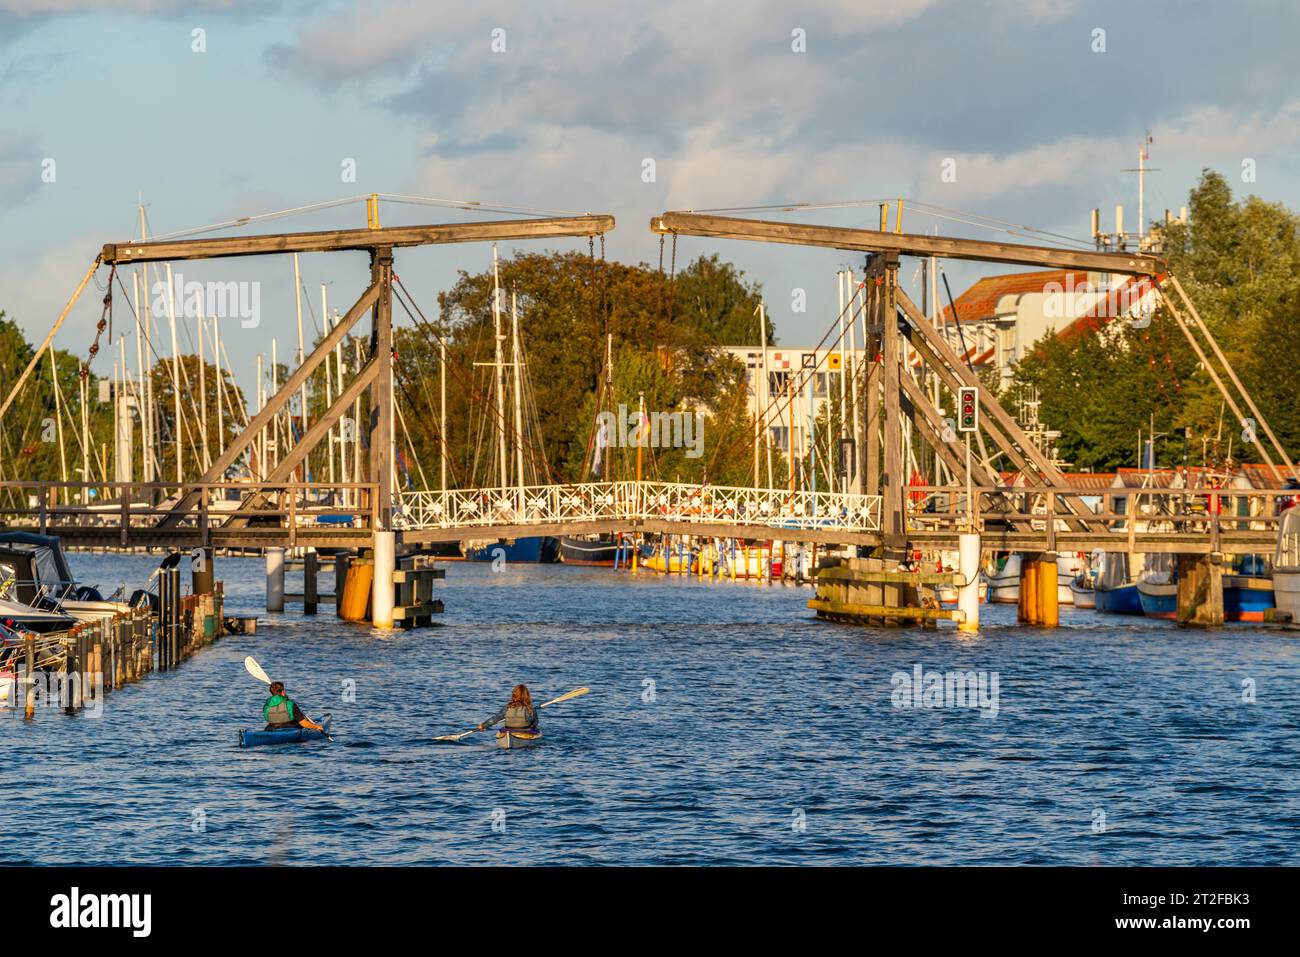 Historische Wieck hölzerne Klappbrücke über den Fluss Ryck, Fischerdorf Wieck, Greifswald, Mecklenburg-Vorpommern, Deutschland Stockfoto